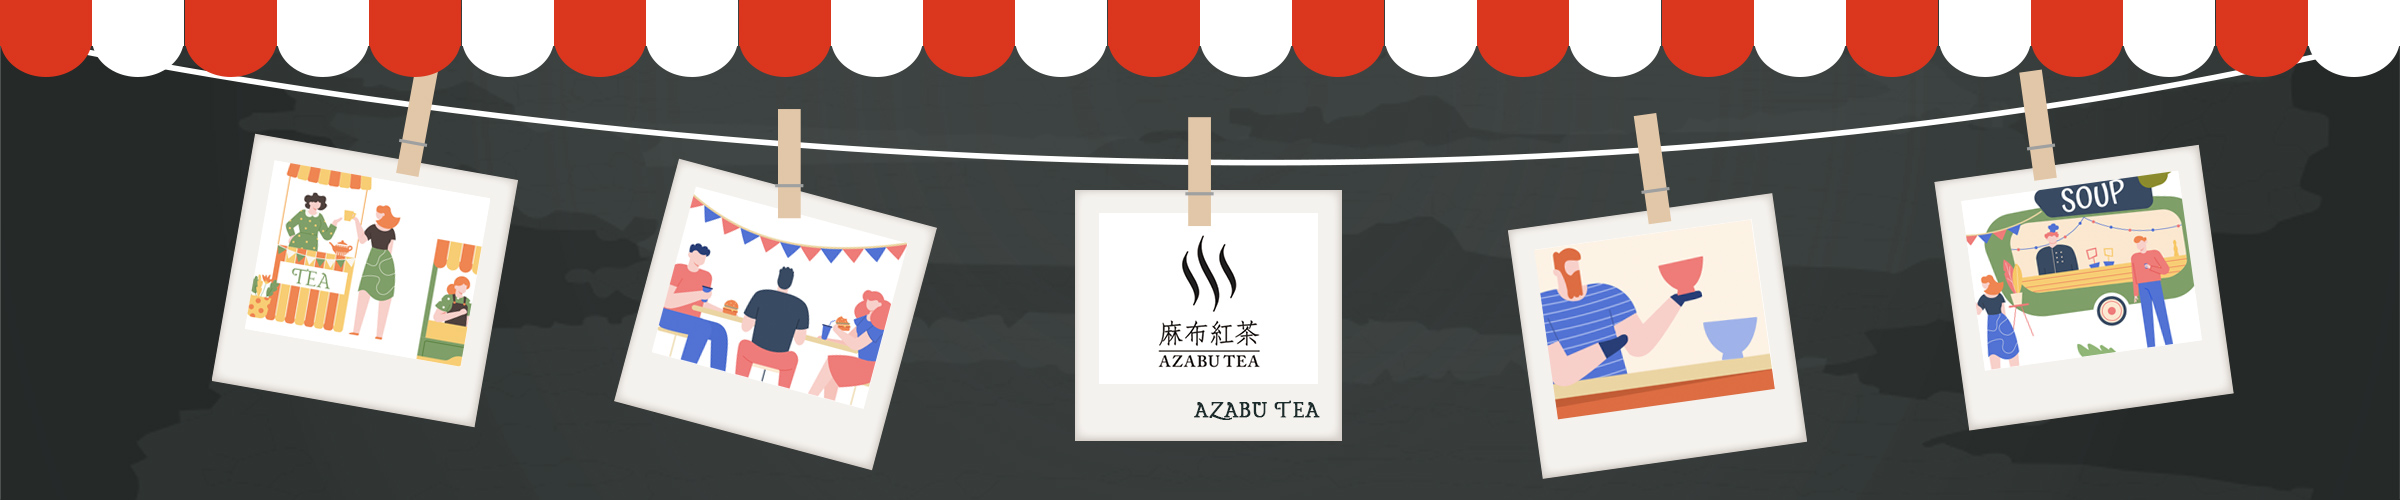 麻布紅茶 MARCHE AZABU